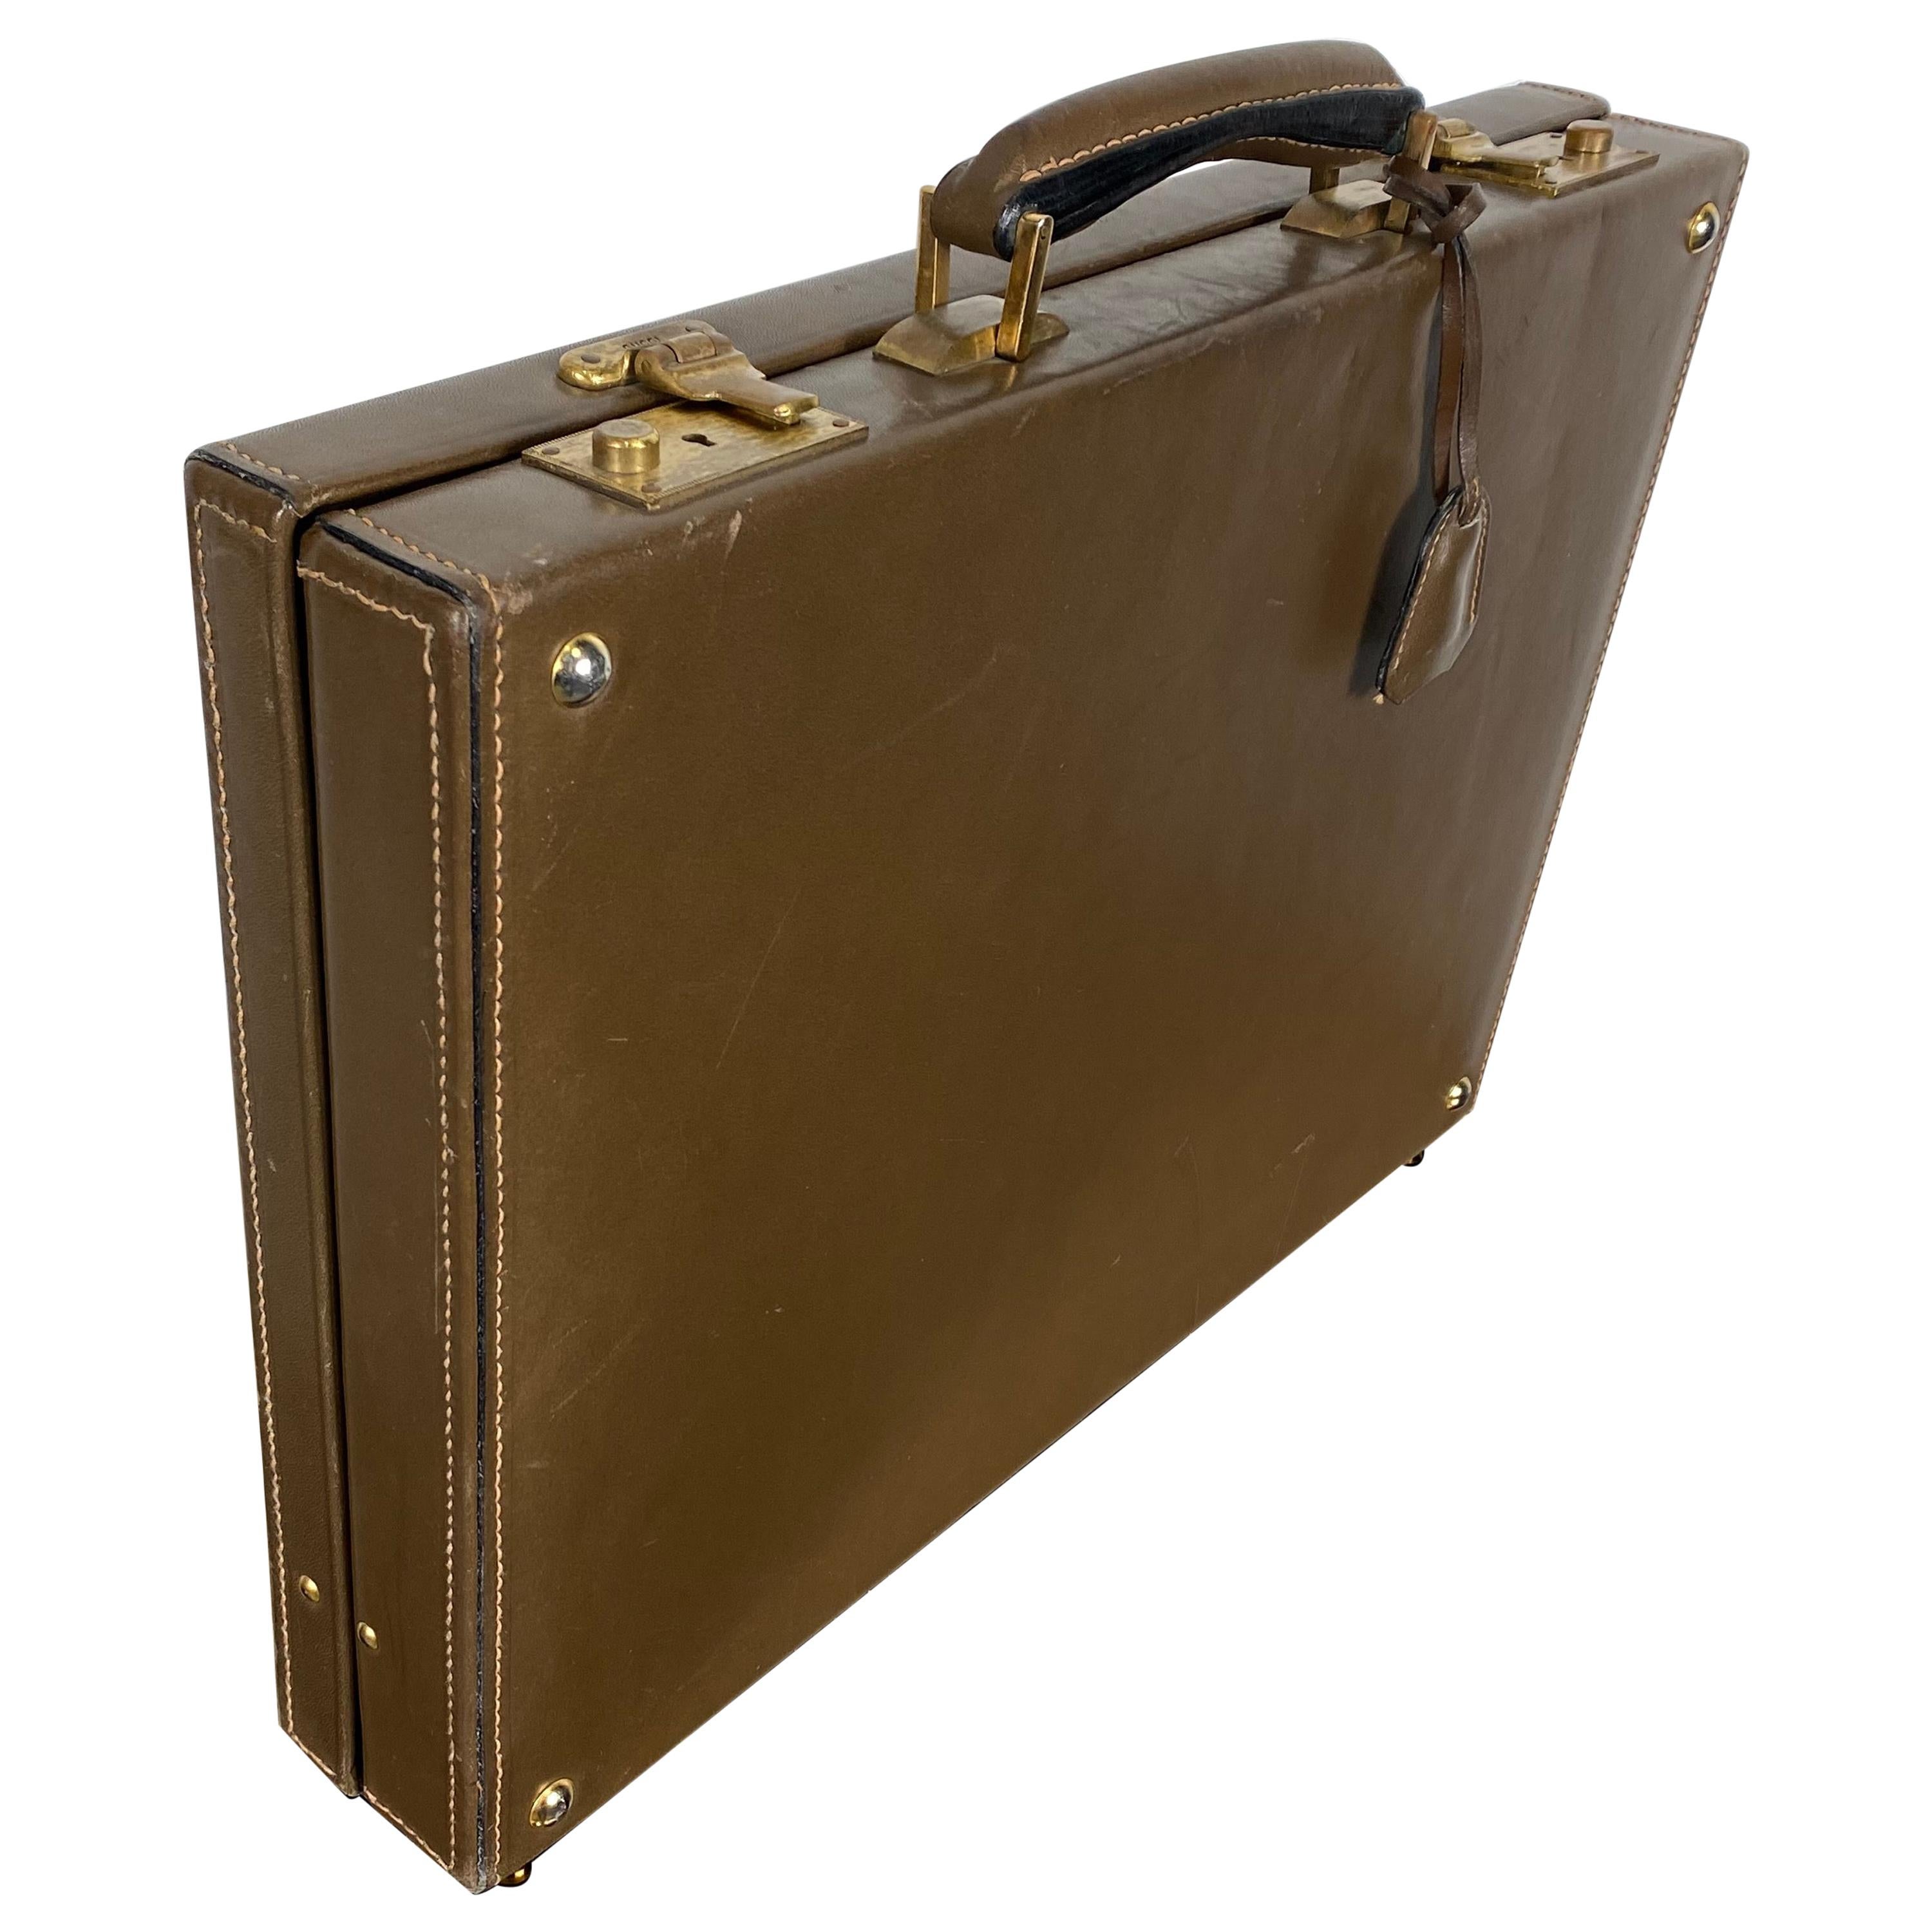 Porte-documents classique en cuir Gucci des années 1970, fabriqué en Italie